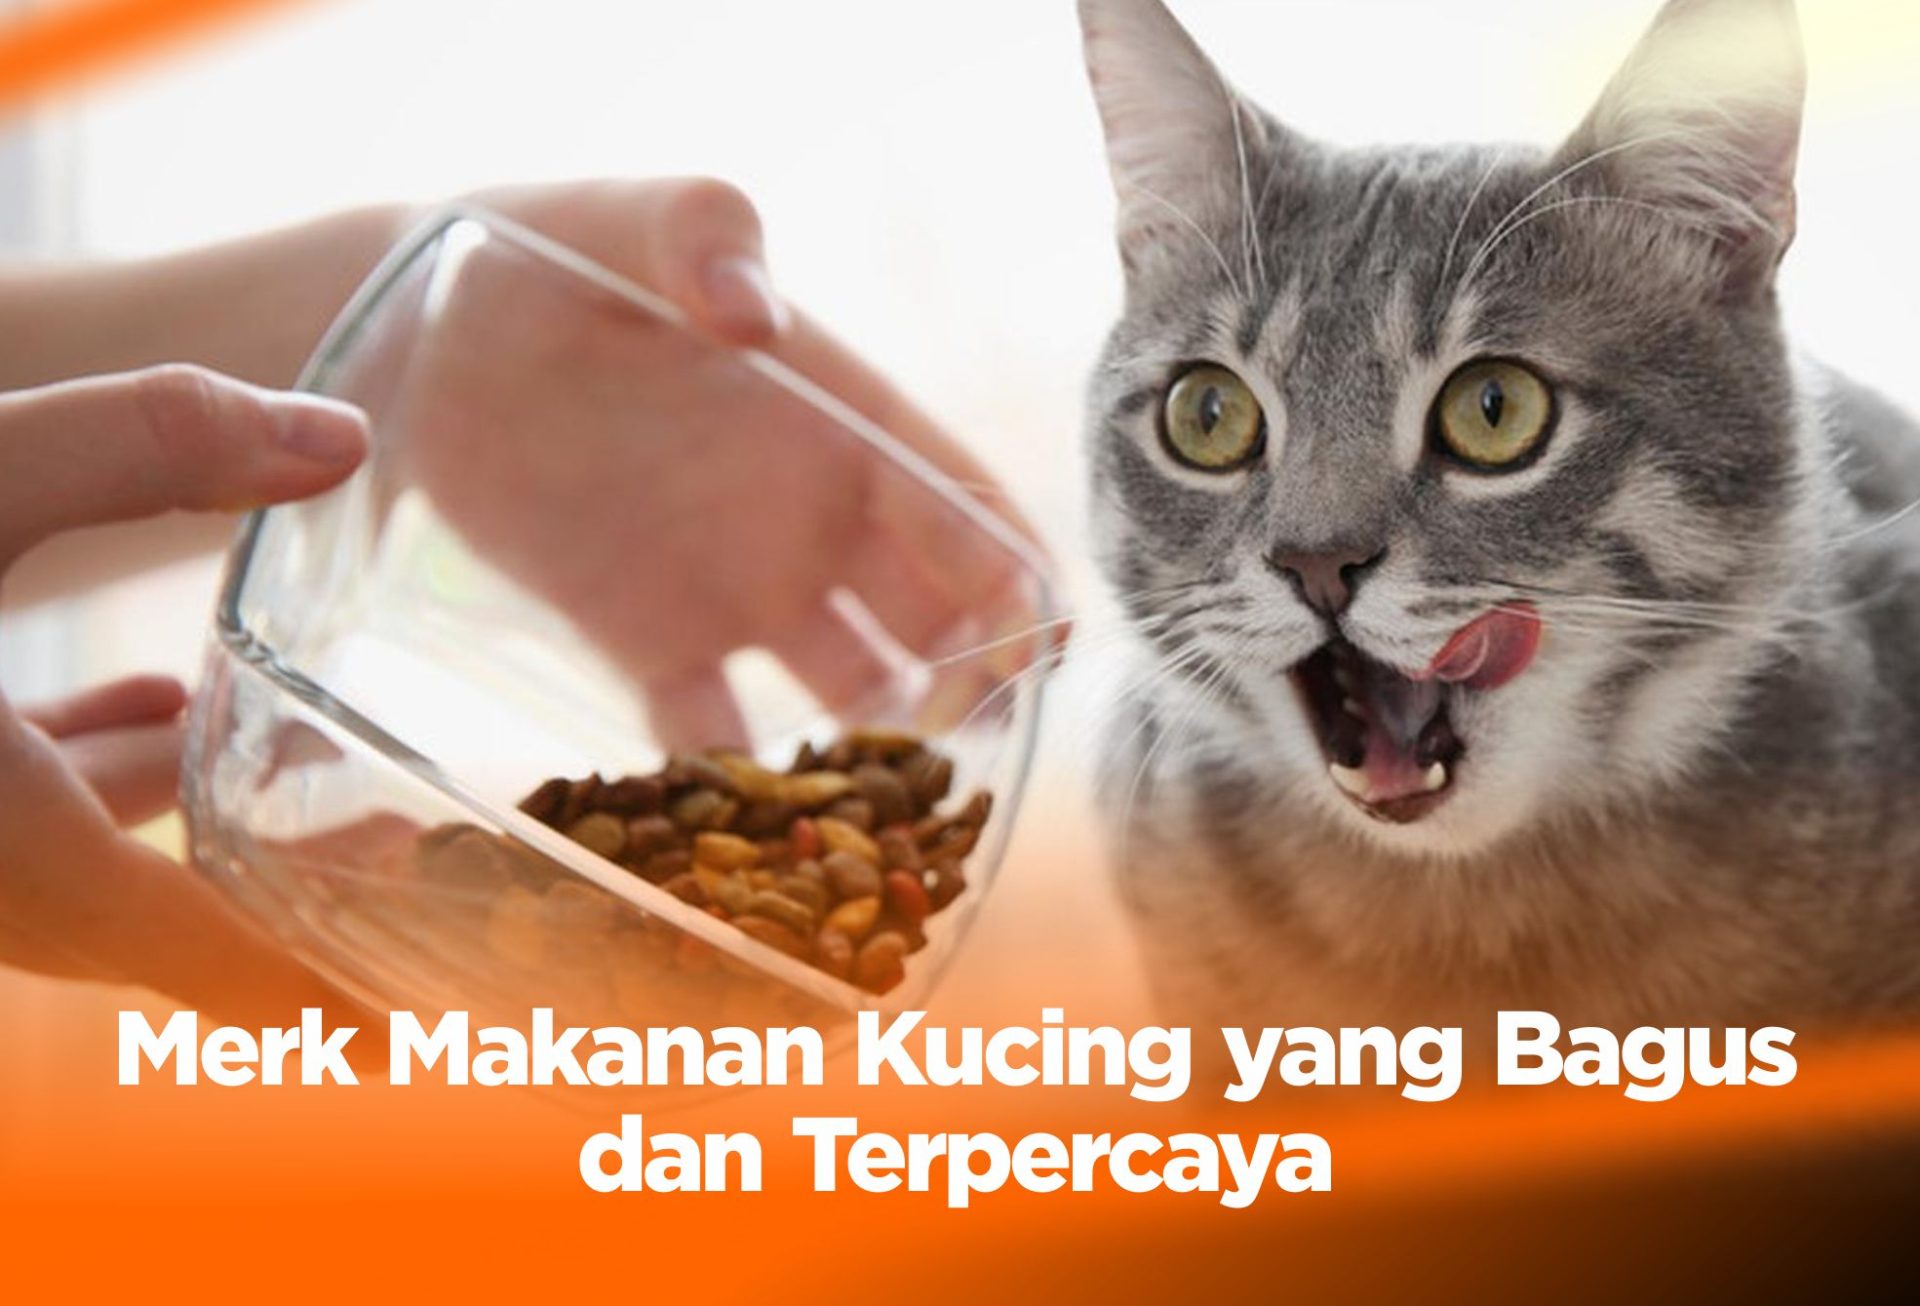 Merk Makanan Kucing yang Bagus dan Terpercaya